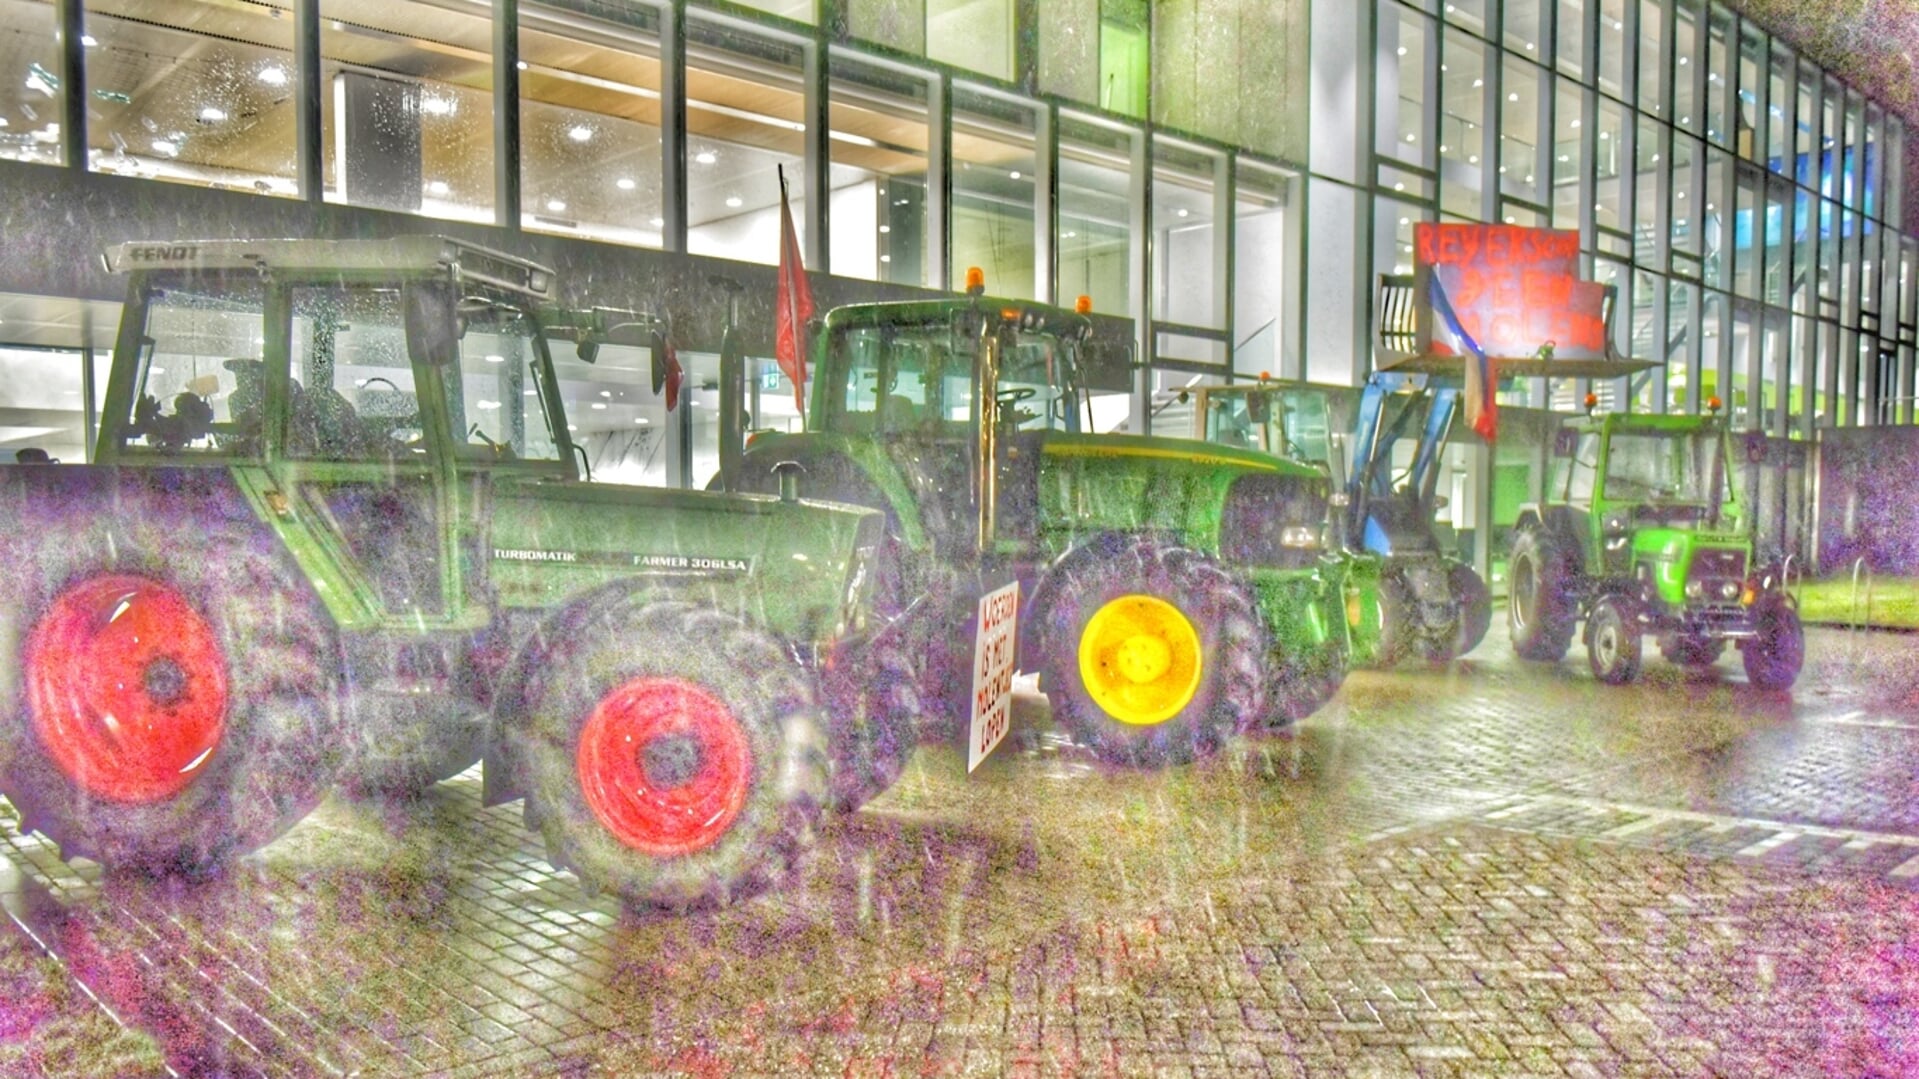 • Tractoren voor de deur van het gemeentehuis in Woerden.